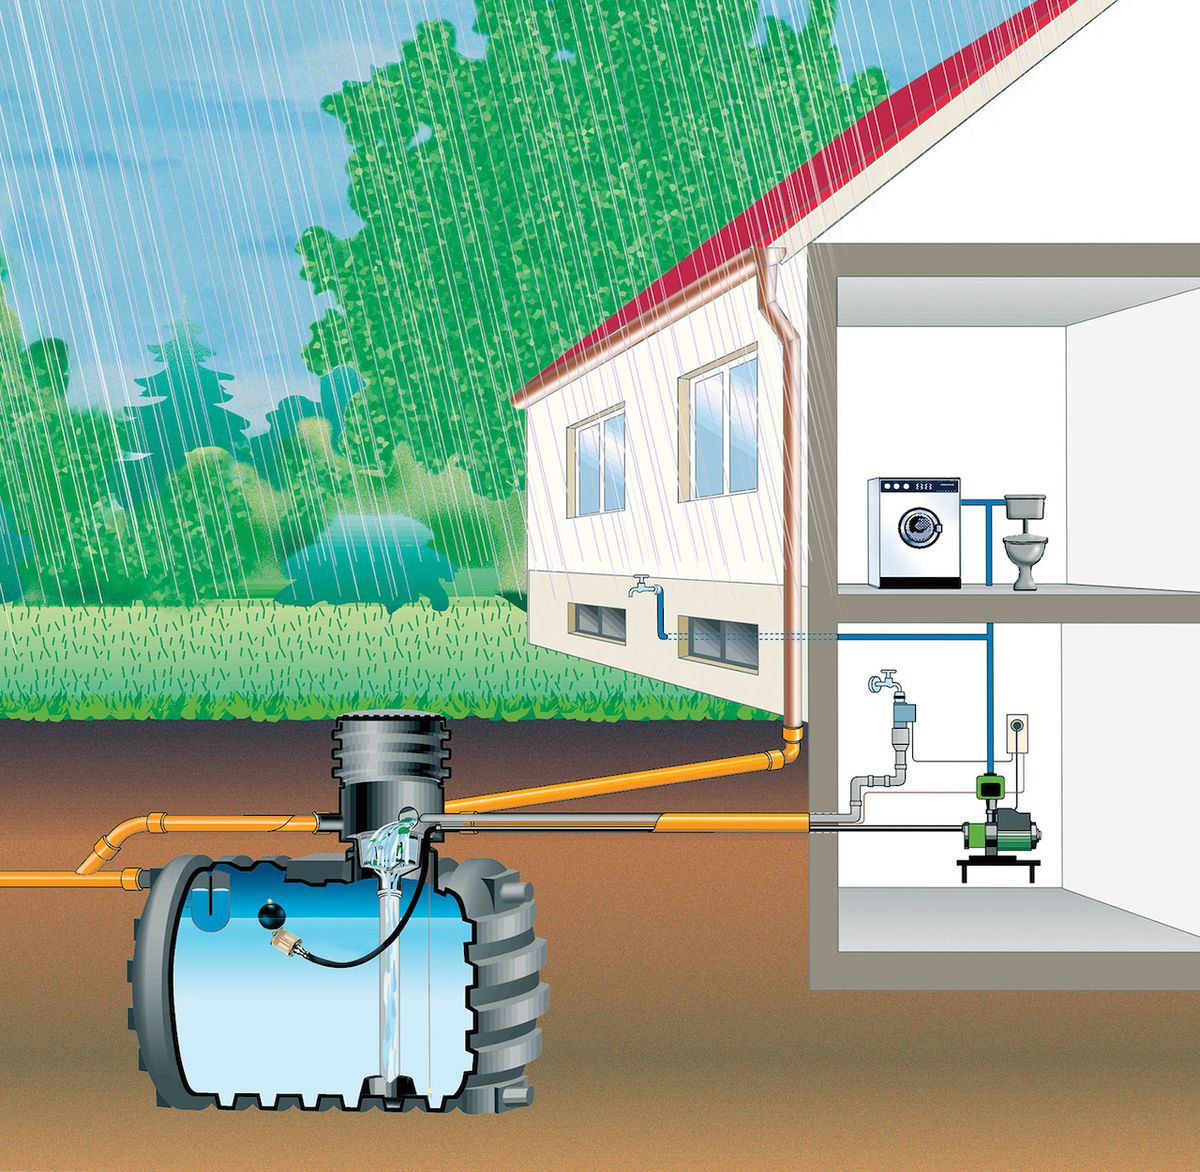 Dešťovou vodu lze využívat nejen k zavlažování zahrady, ale i ke splachování toalety. Pro tyto účely je vhodnější podzemní nádrž, která je připojena na samostatný rozvod vody.